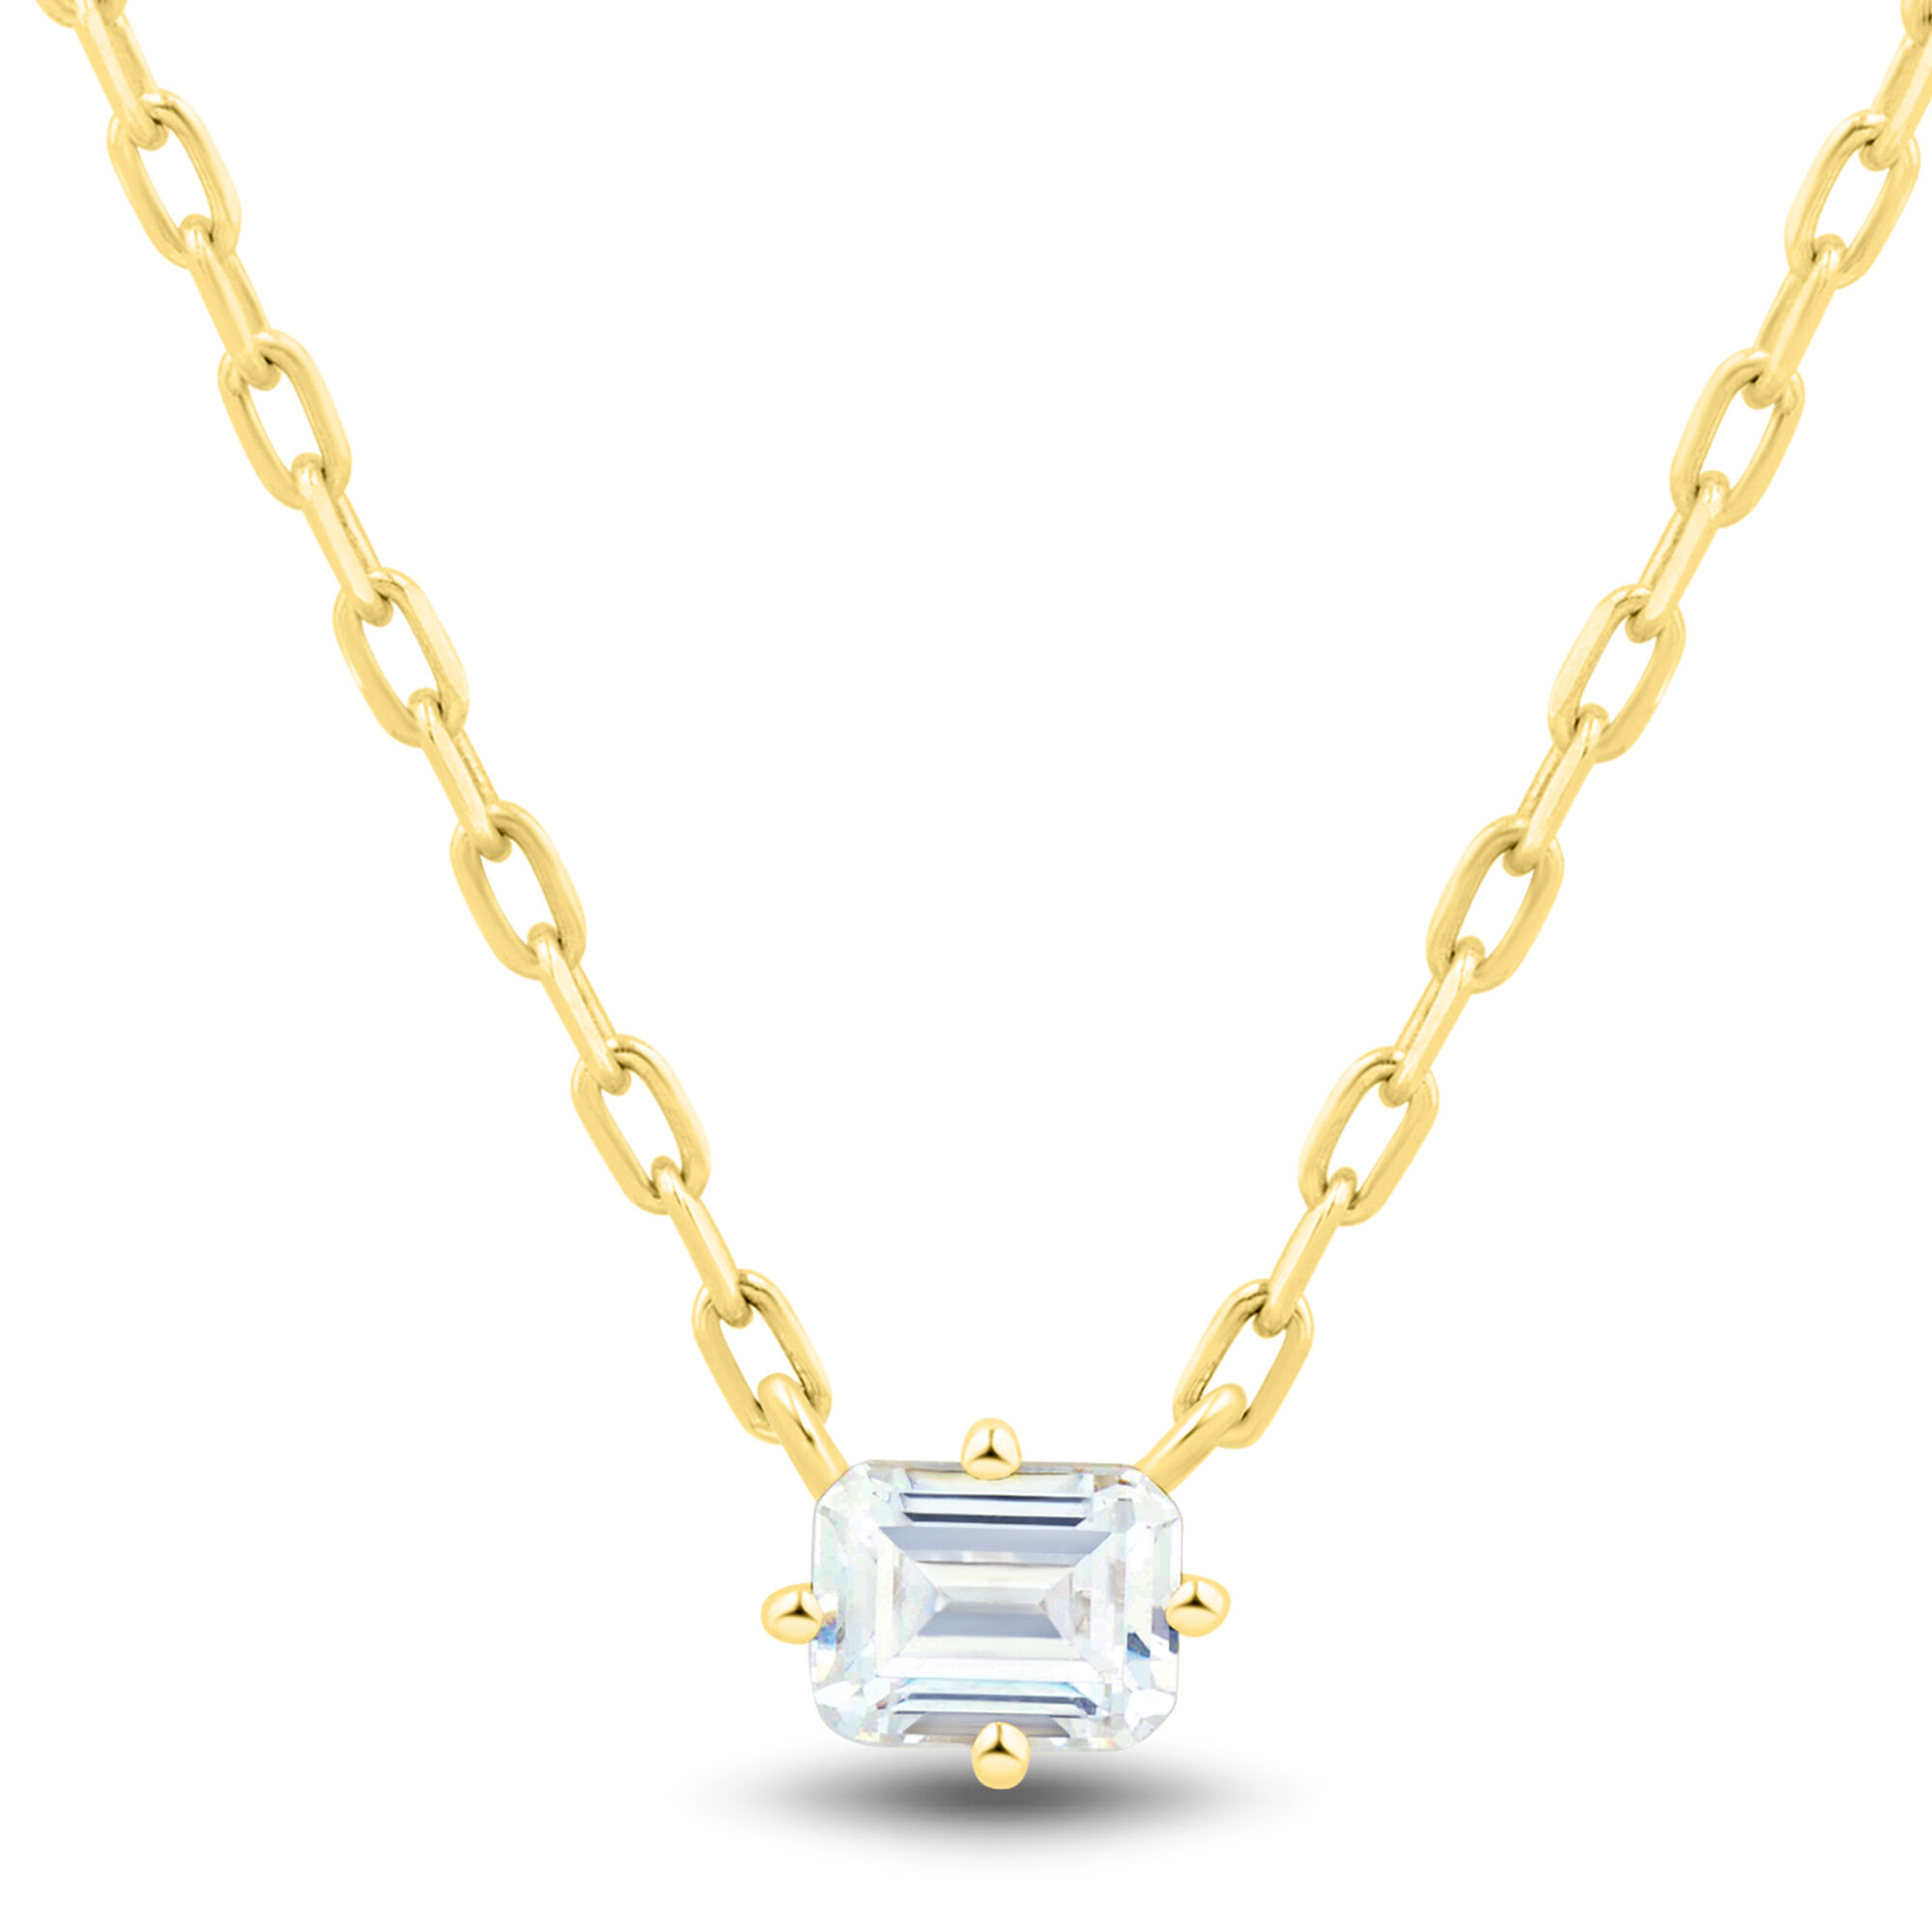 Emerald Cut Diamond Necklace – Dominique's Jewelry